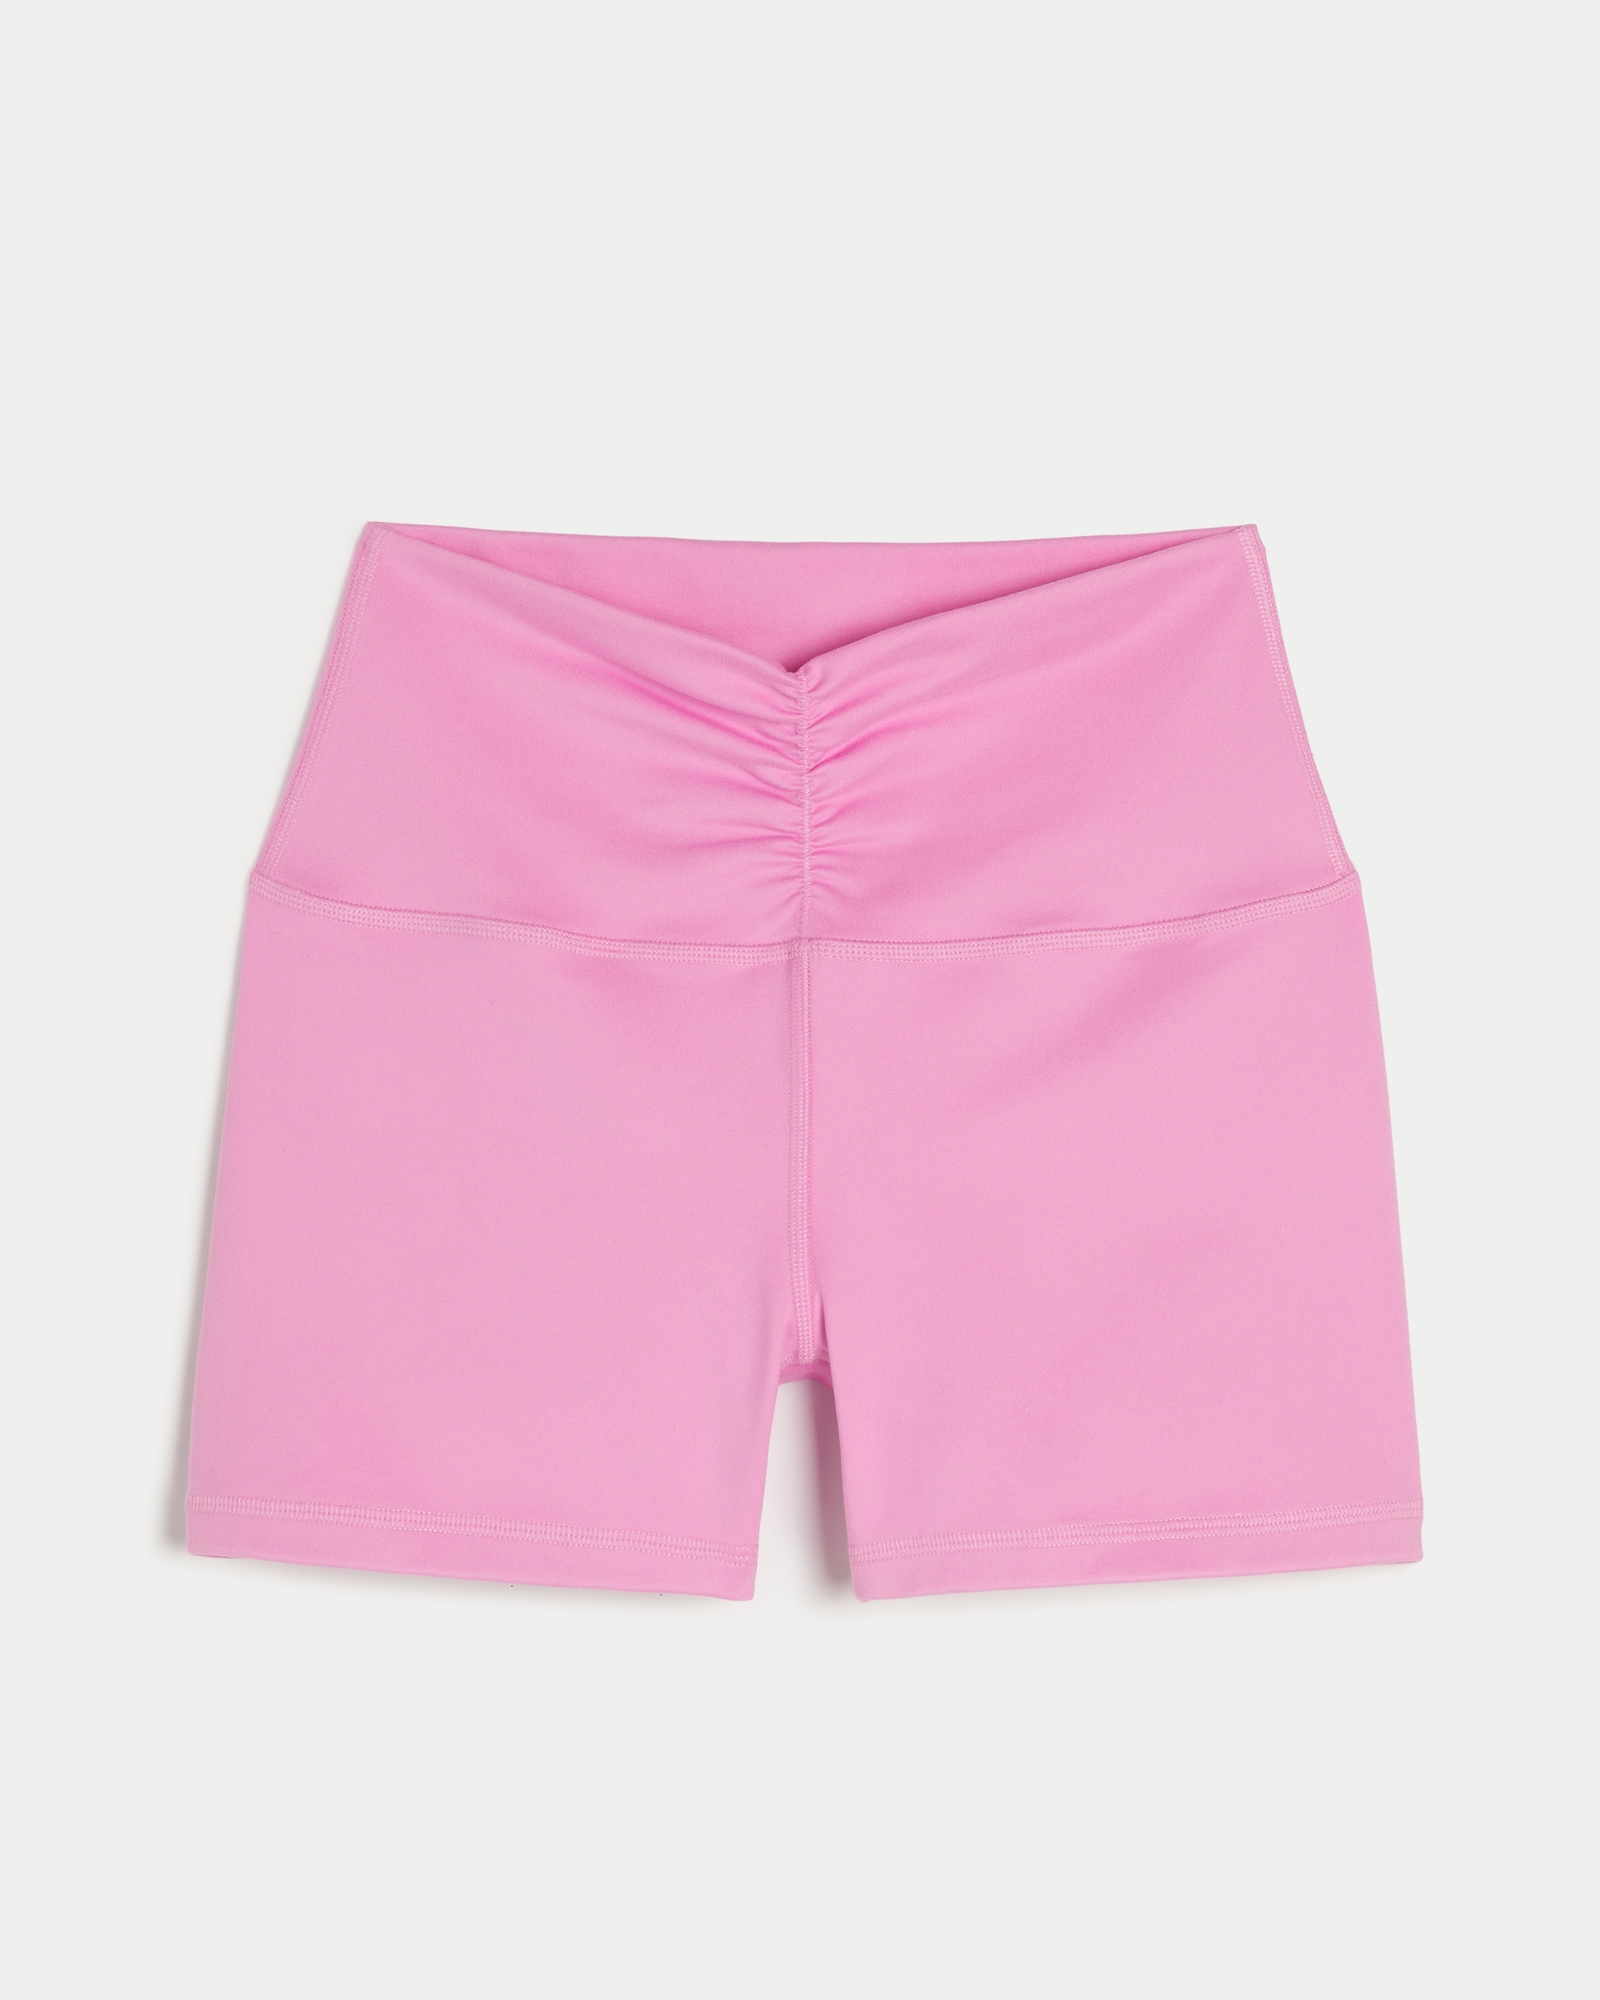 Lululemon Hotty Hot Shorts Pink Size 4 - $115 - From Ashley